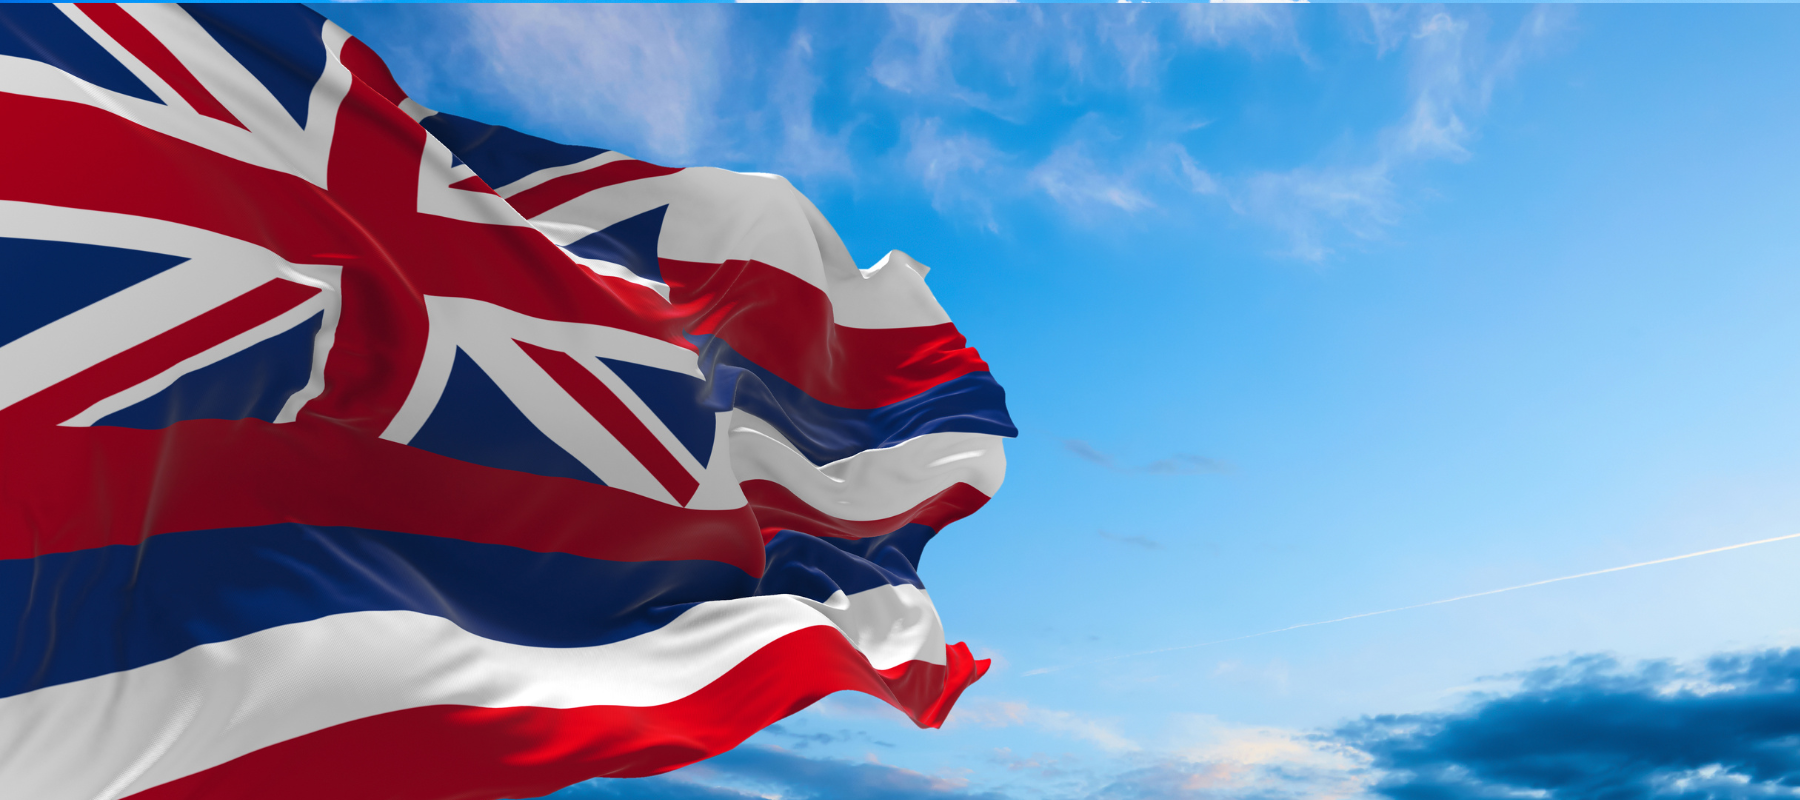 hawaiian flag against a blue sky